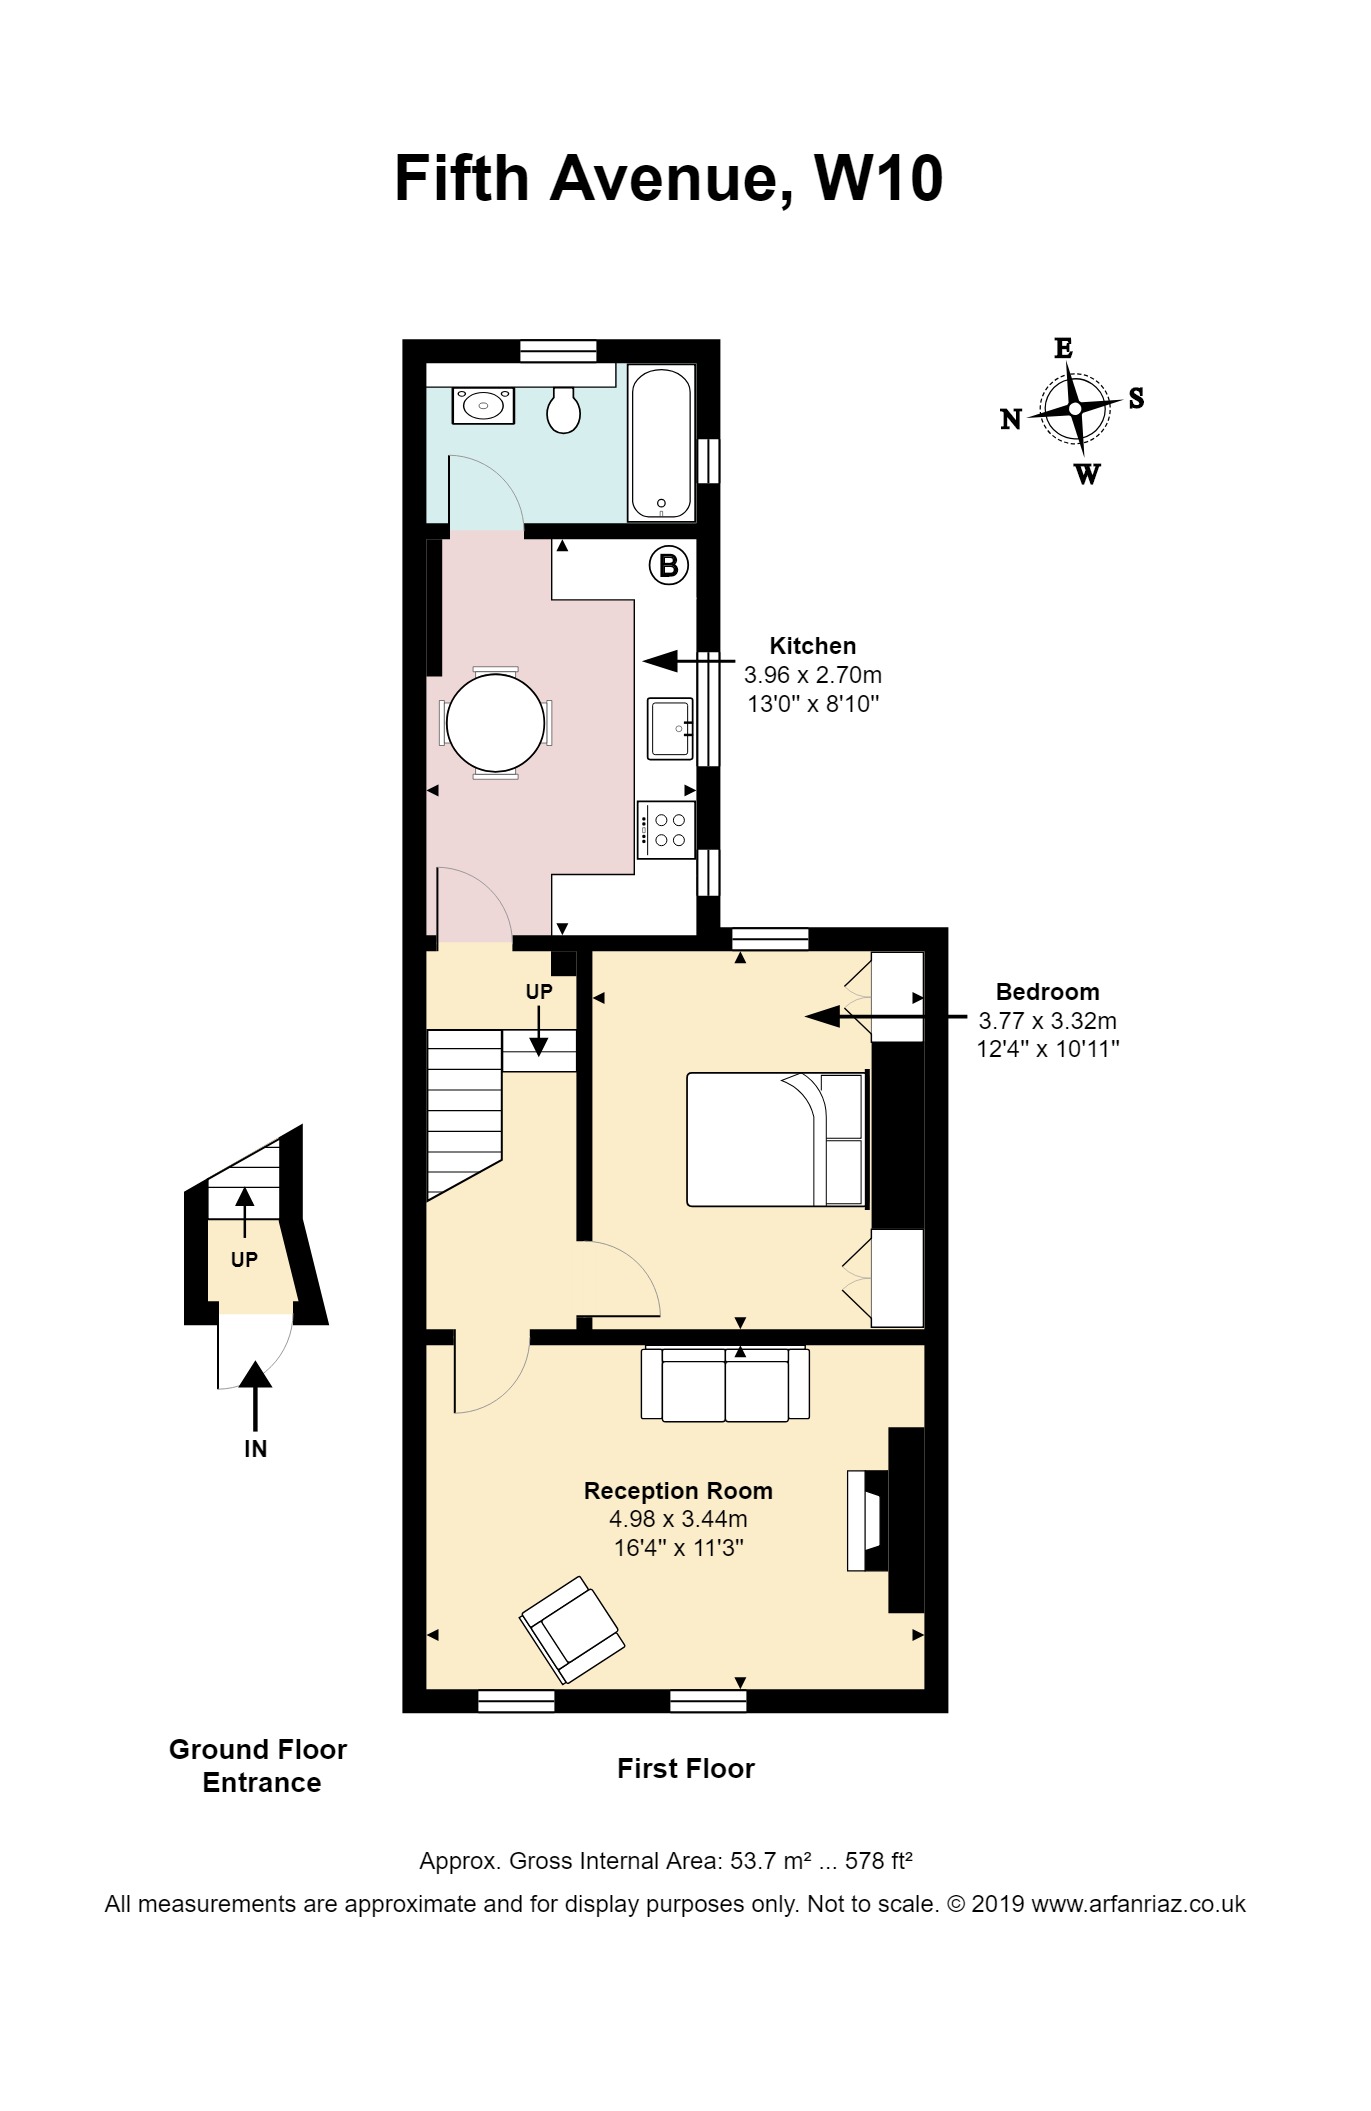 Property Floor Plans